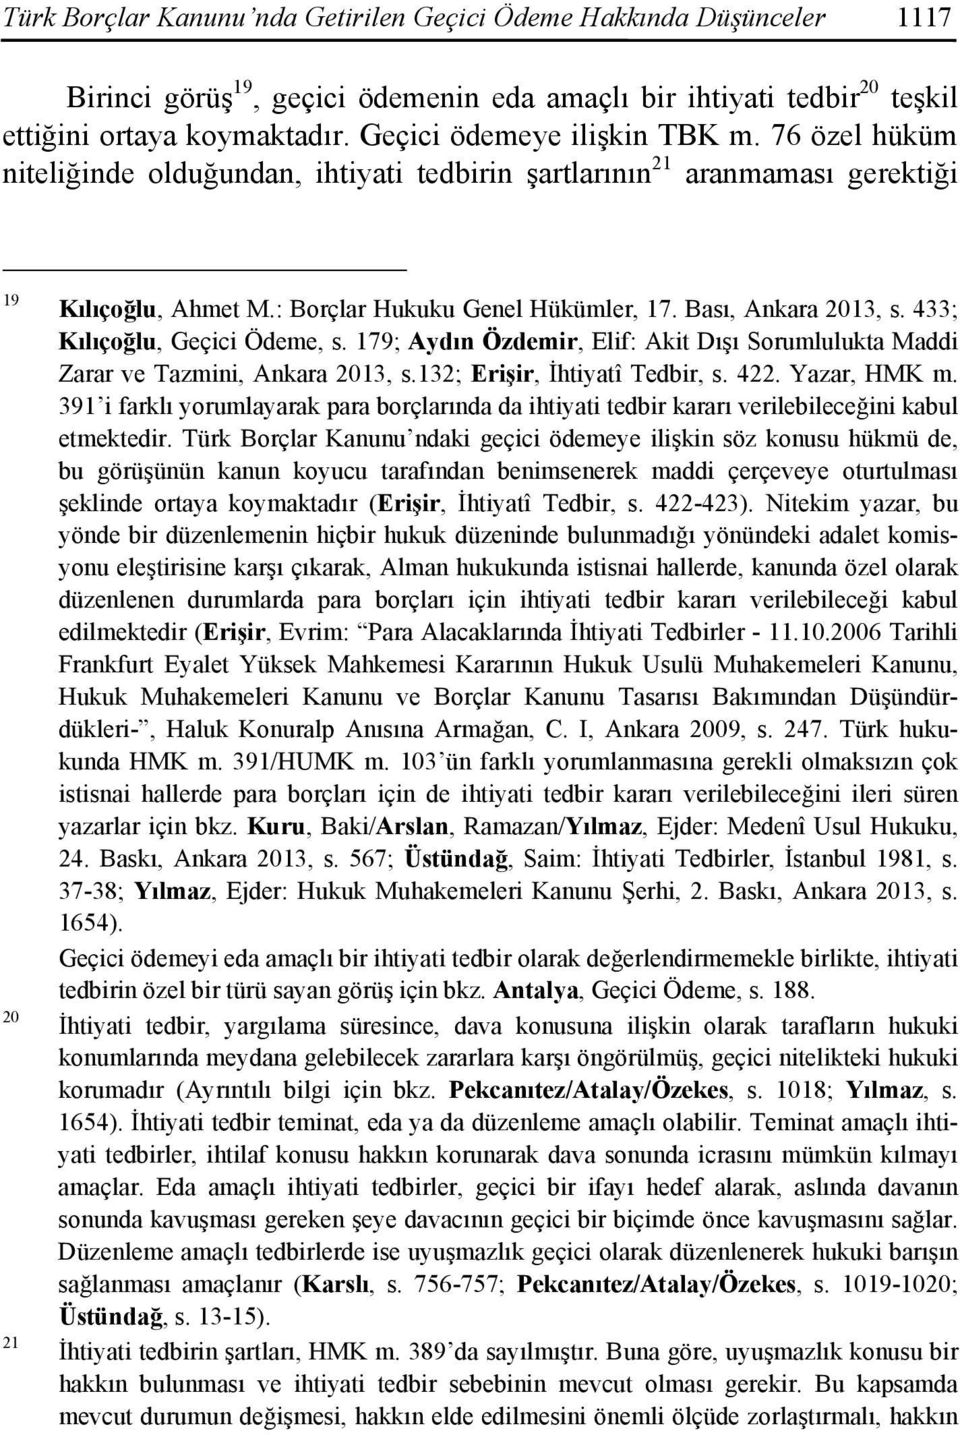 Bası, Ankara 2013, s. 433; Kılıçoğlu, Geçici Ödeme, s. 179; Aydın Özdemir, Elif: Akit Dışı Sorumlulukta Maddi Zarar ve Tazmini, Ankara 2013, s.132; Erişir, İhtiyatî Tedbir, s. 422. Yazar, HMK m.